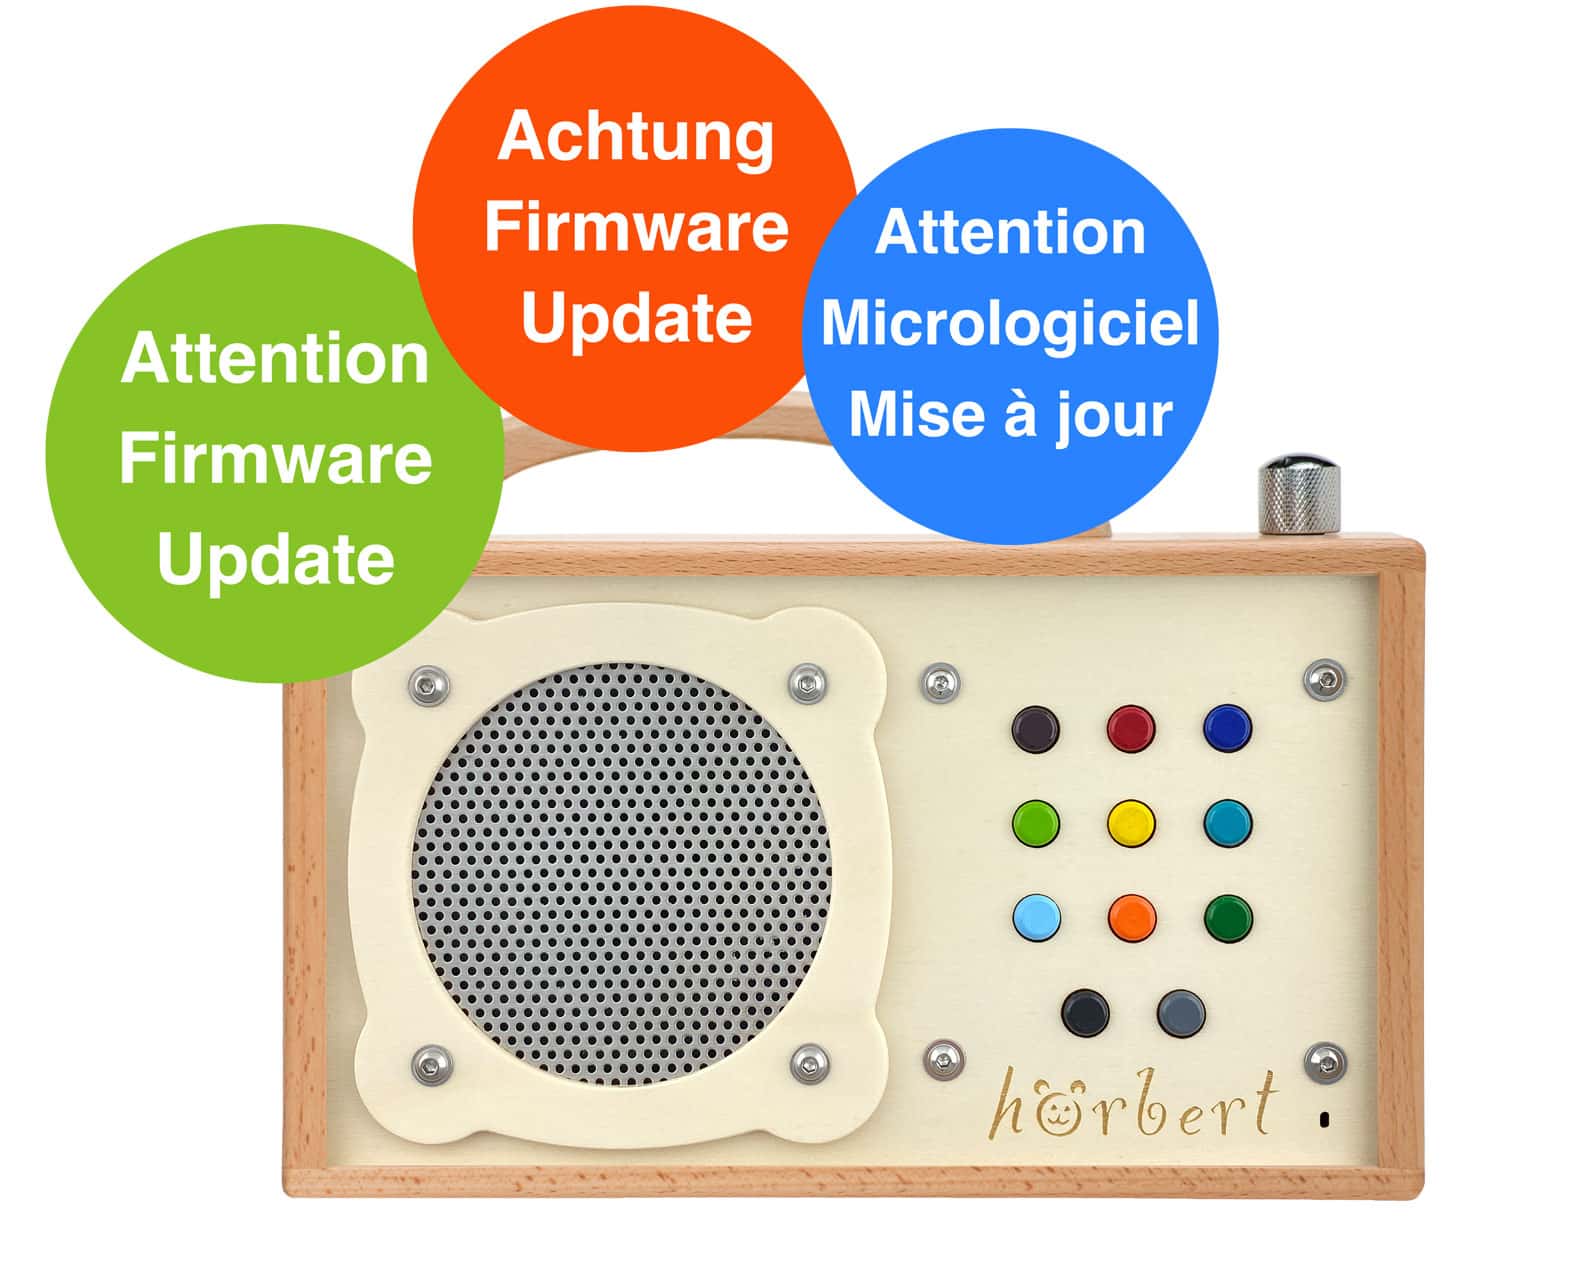 hörbert gets a firmware update